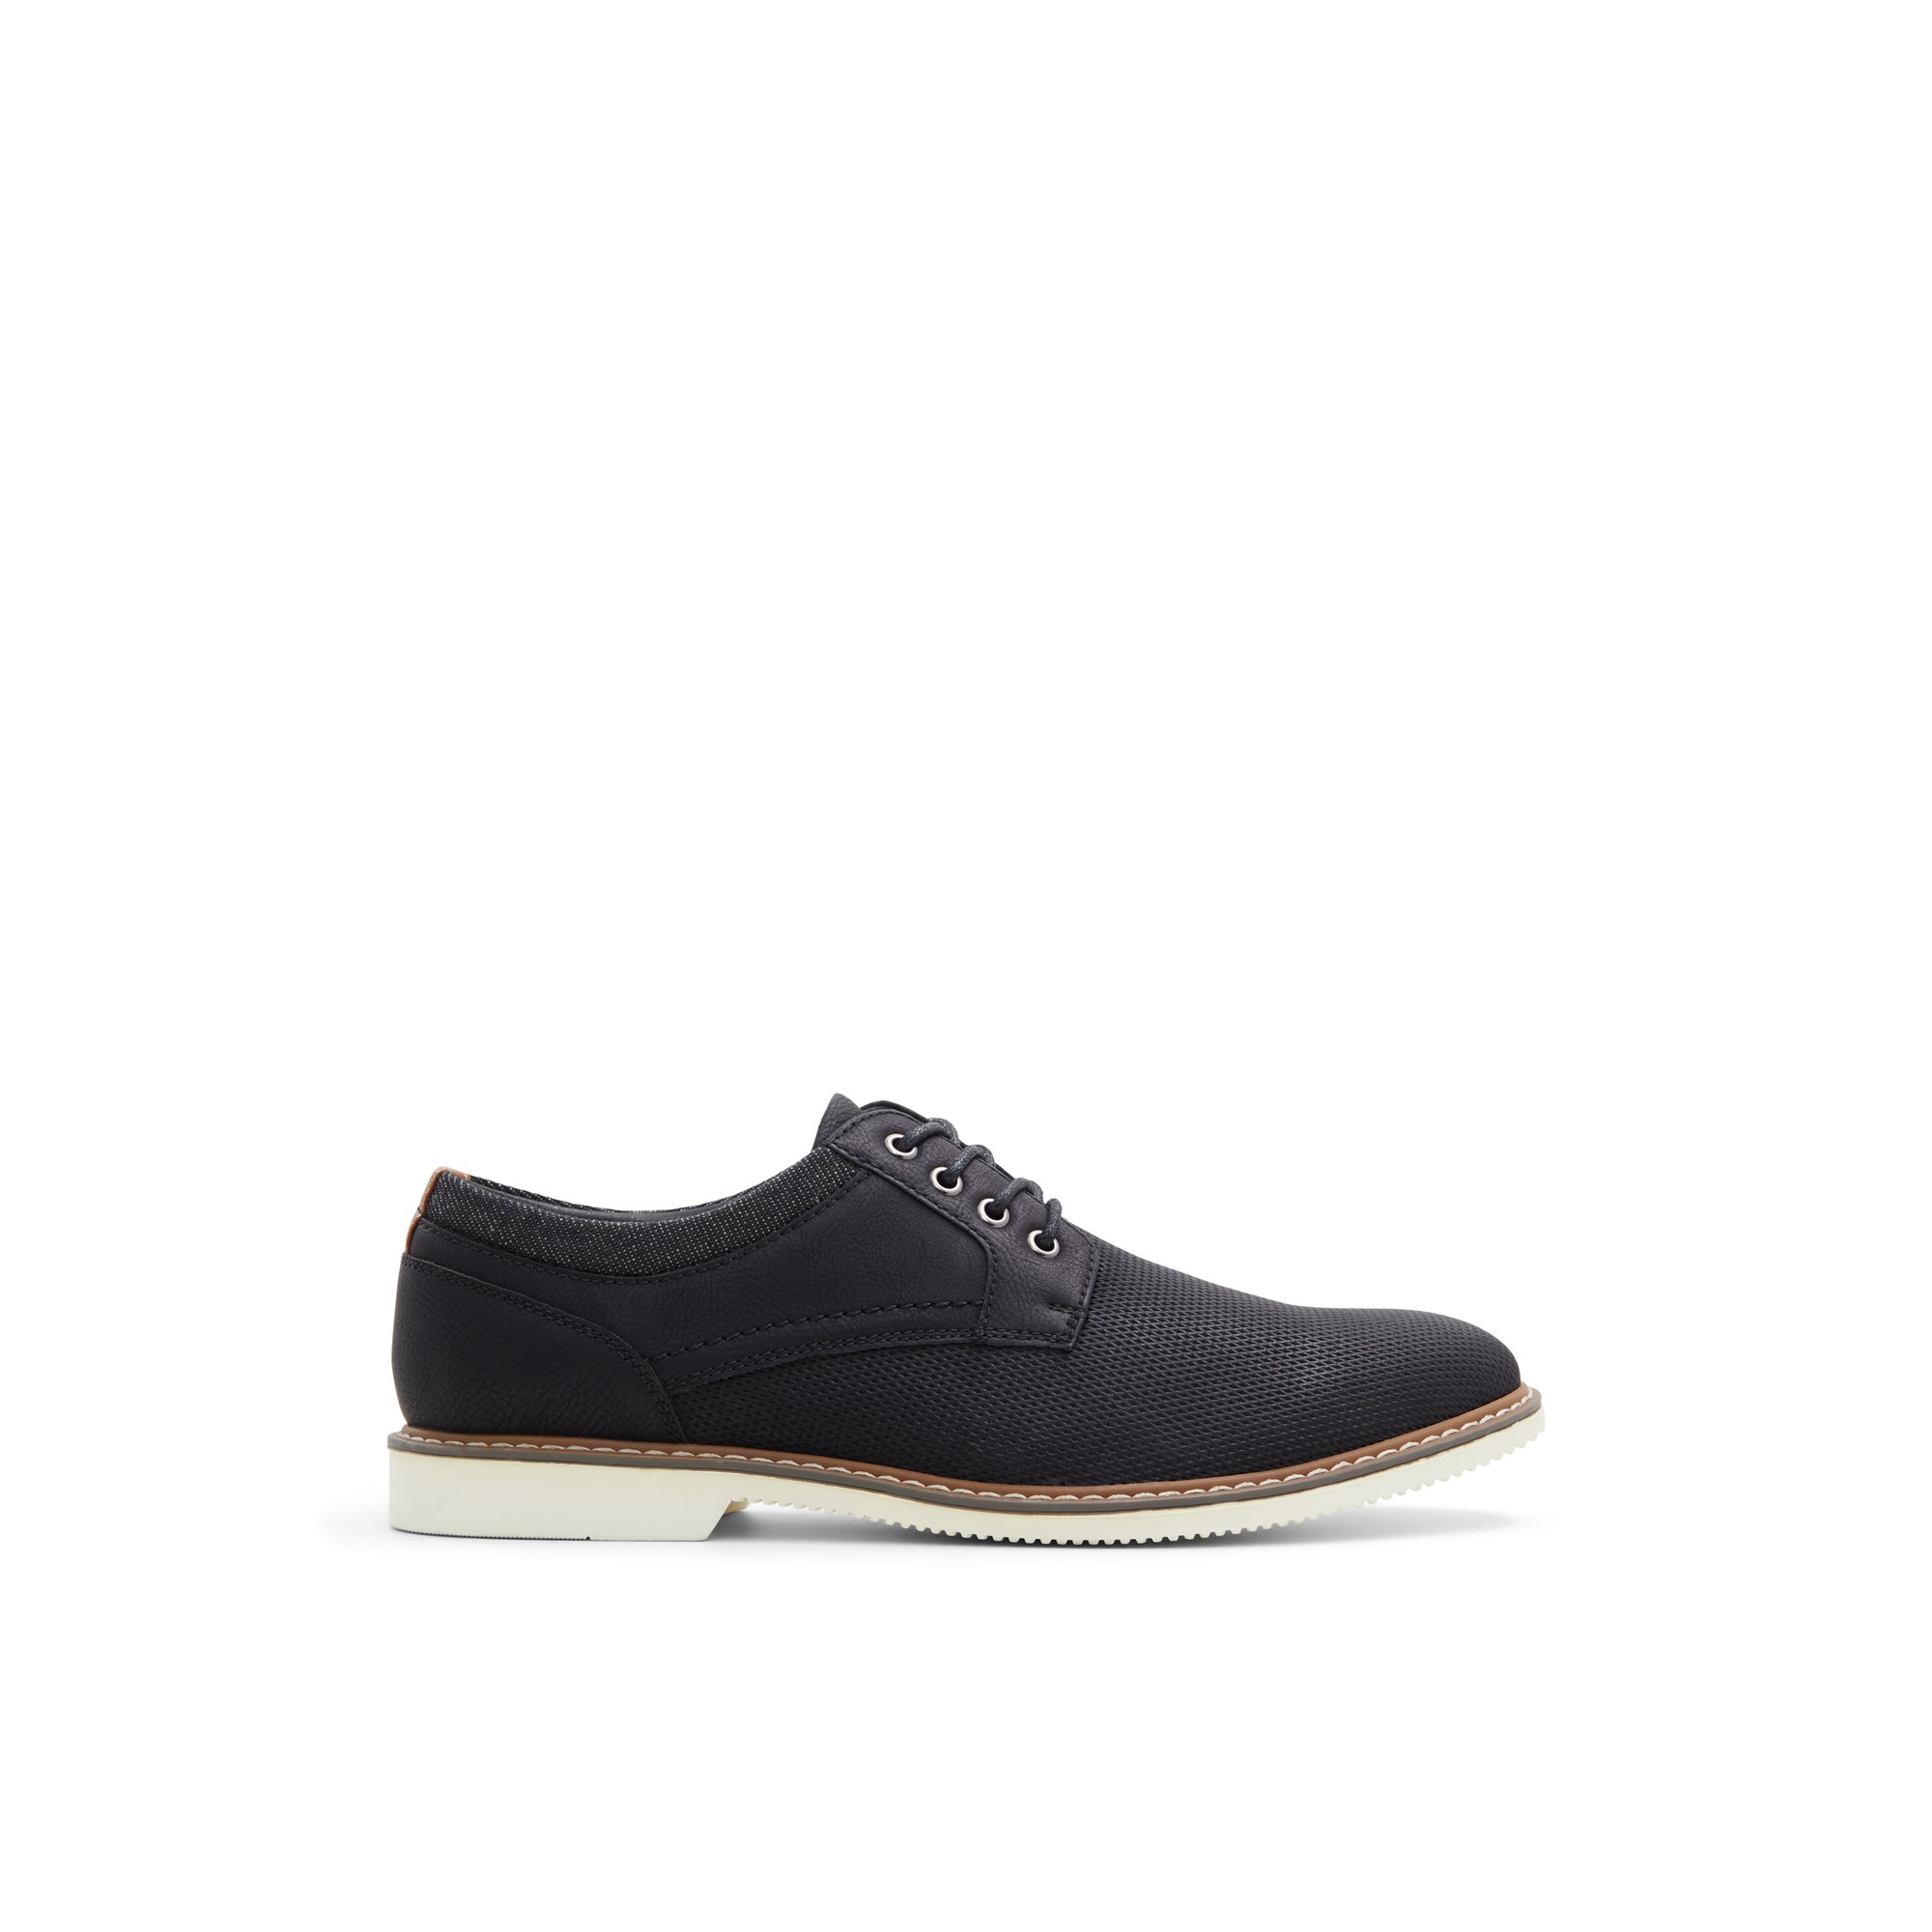 Weekenders Mireand - Men's Footwear Shoes Casual Lace-Ups Black